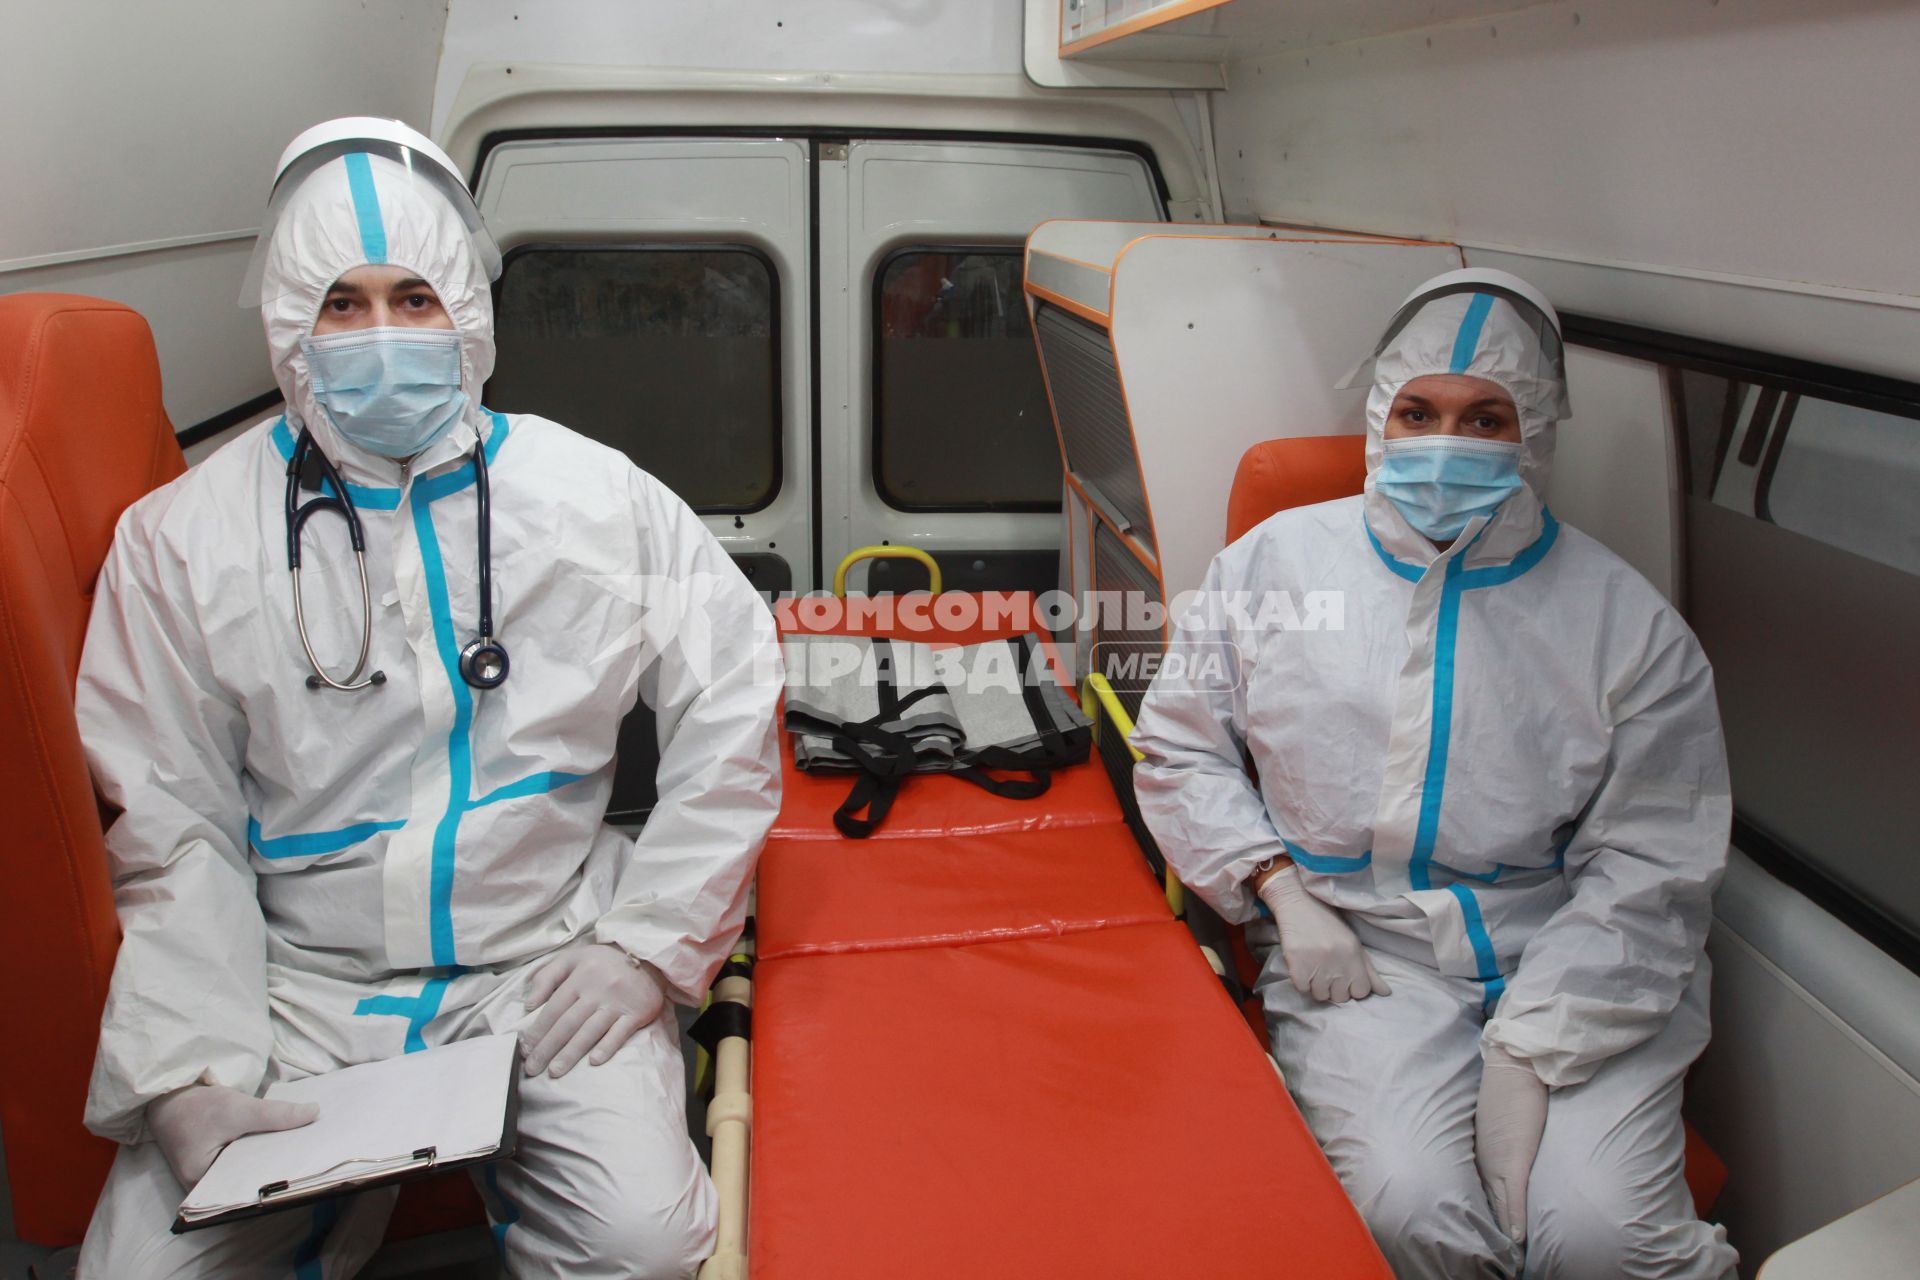 Иркутск. Медицинские работники в защитных костюмах в автомобиле скорой помощи.